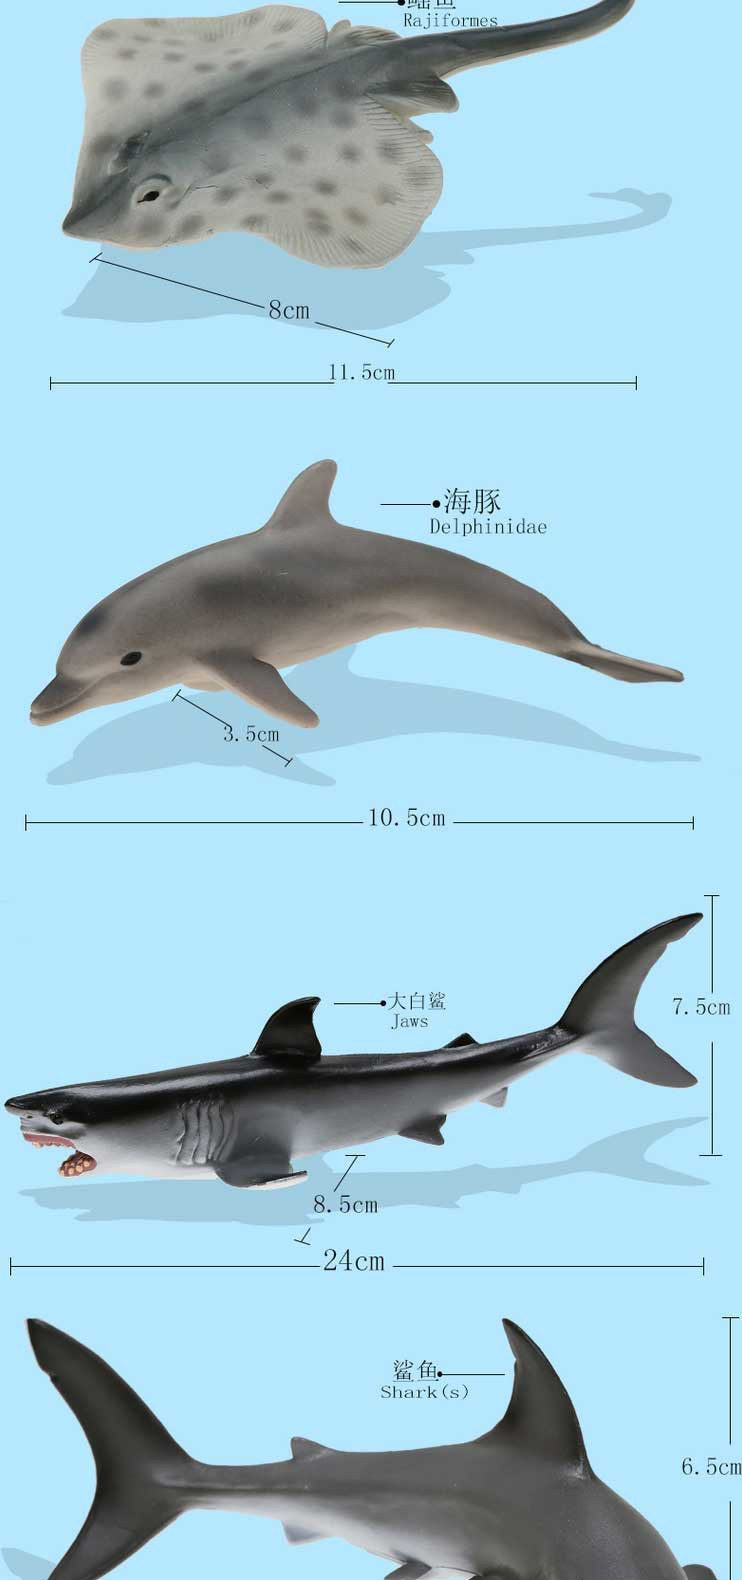 活石 仿真抹香鲸大白鲨海龟海豹鲨鱼蓝鲸模型虎鲸海洋世界动物模型玩具